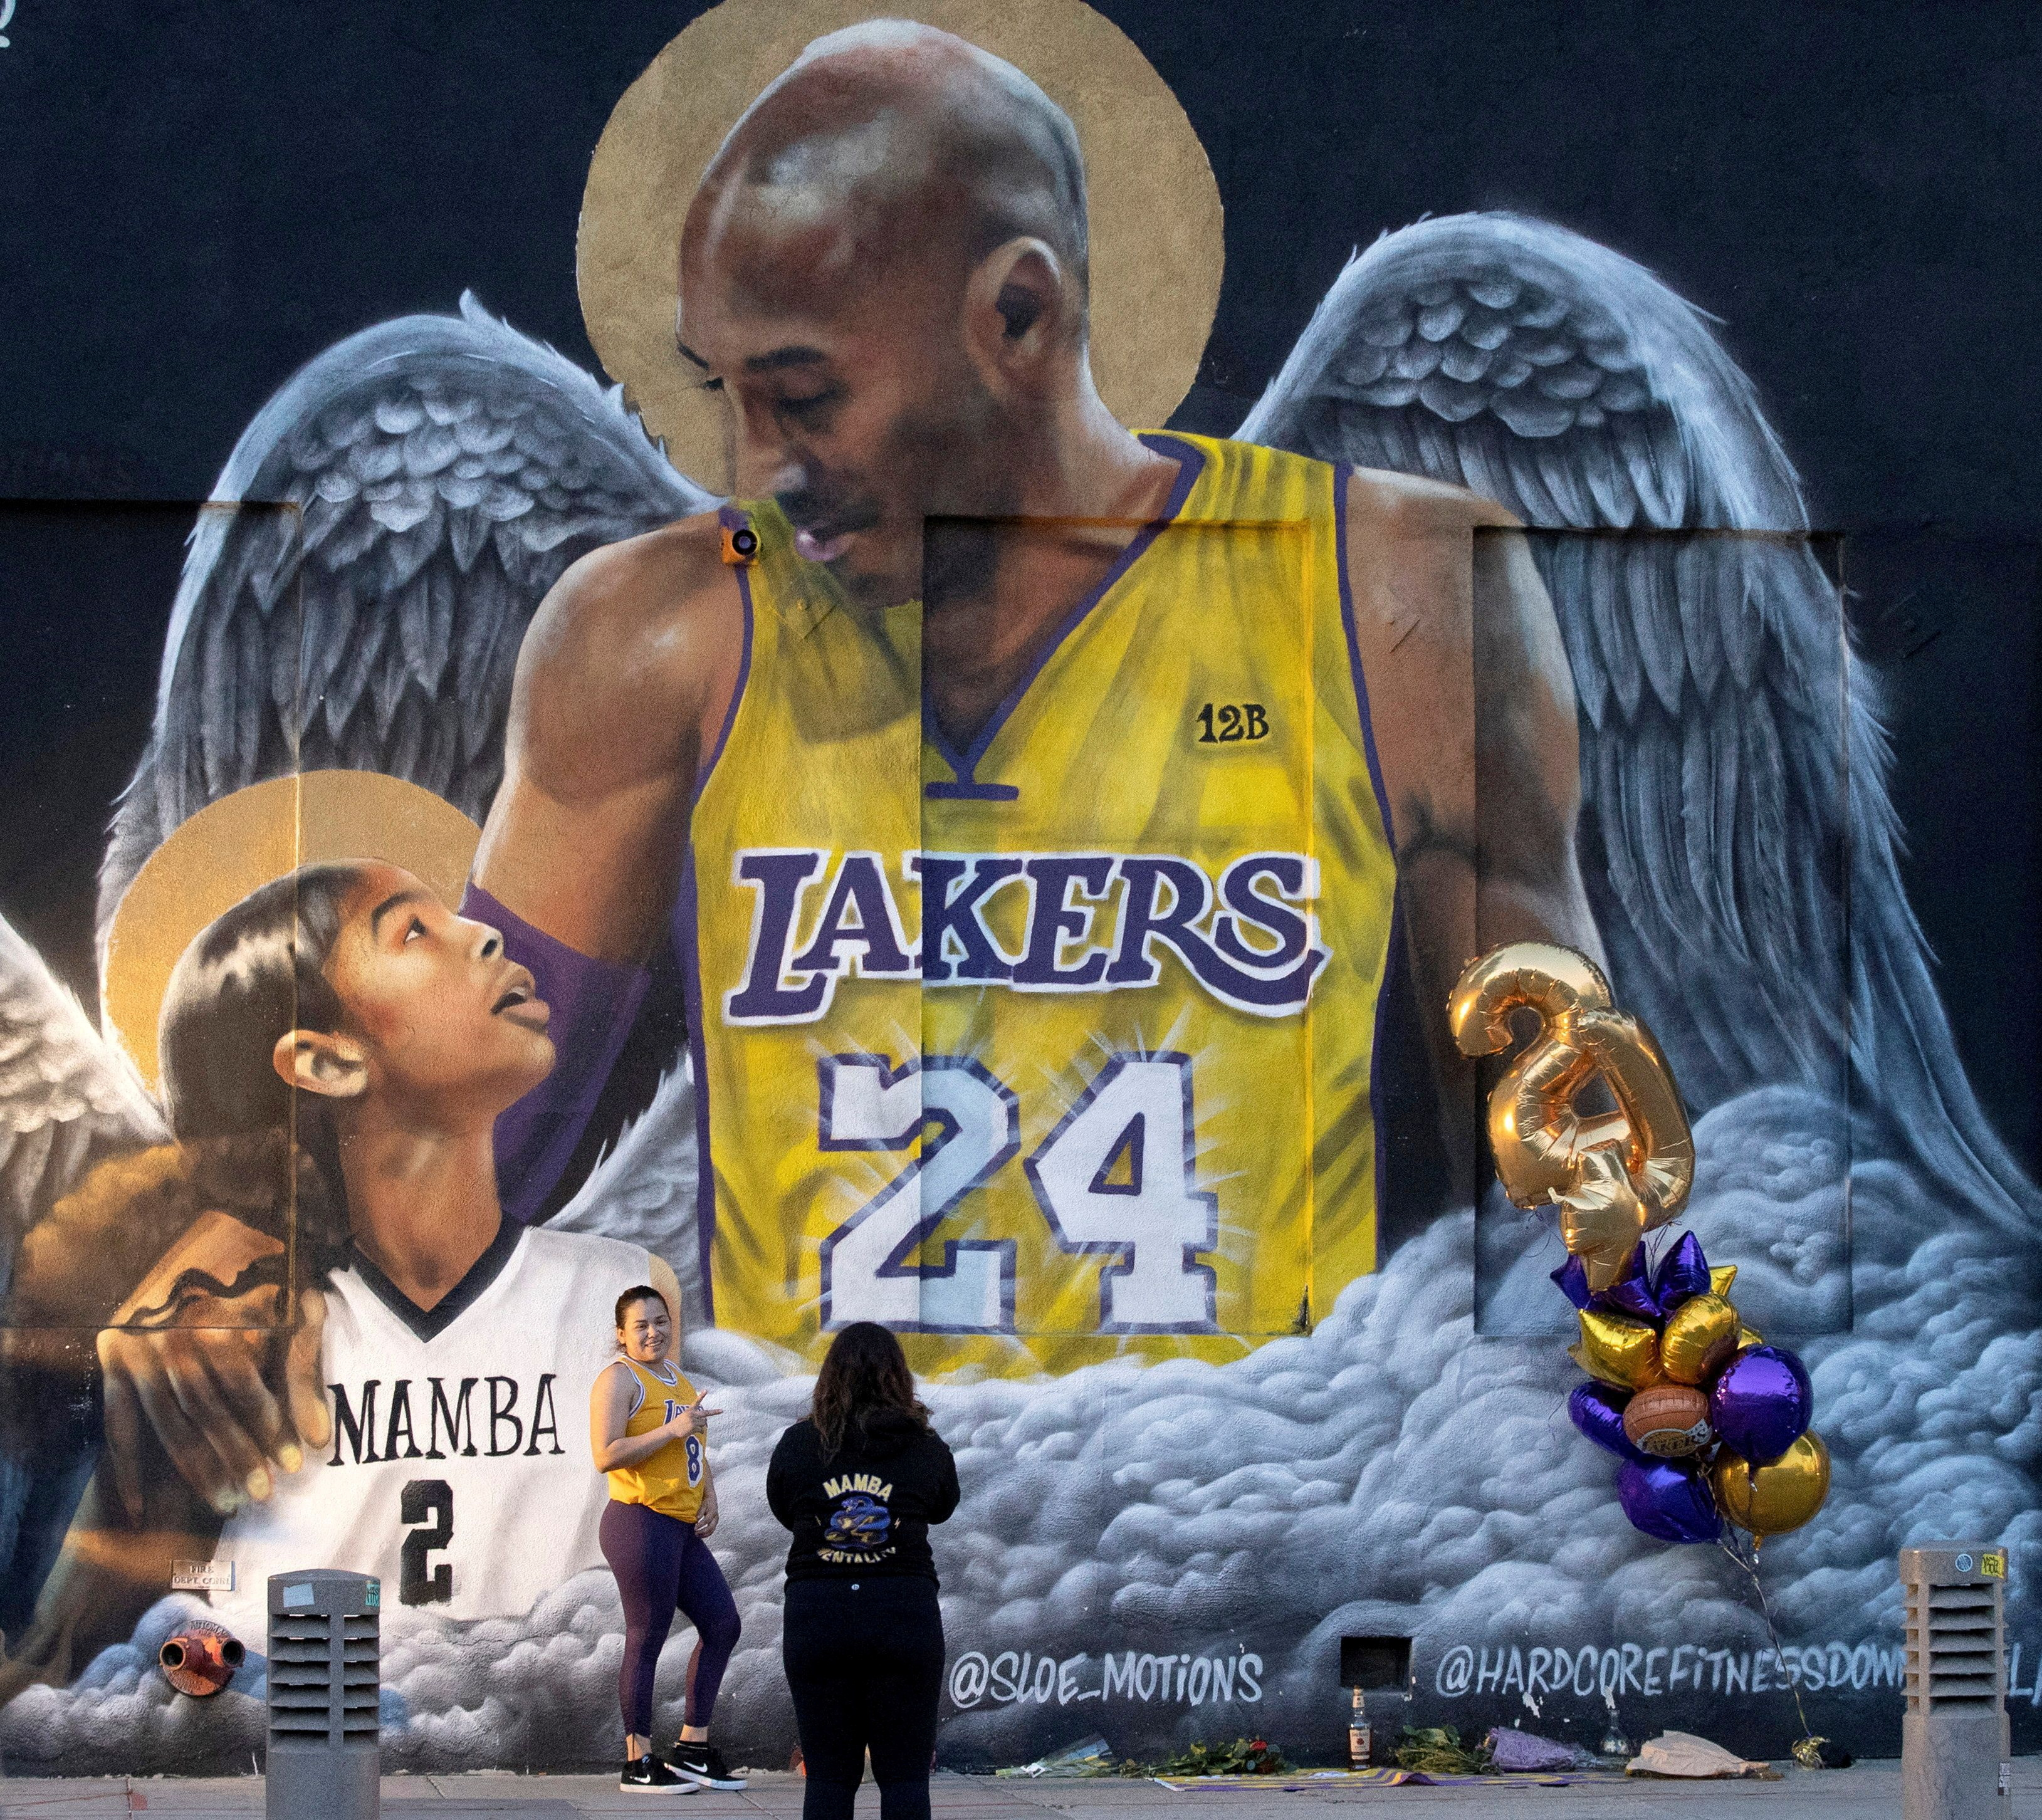 Un fan posa junto a un mural del fallecido Kobe Bryant, que pereció junto a su hija y otras siete personas cuando su helicóptero se estrelló contra una ladera, en Los Ángeles, California, Estados Unidos, 26 de enero de 2021. REUTERS/Mario Anzuoni/Archivo